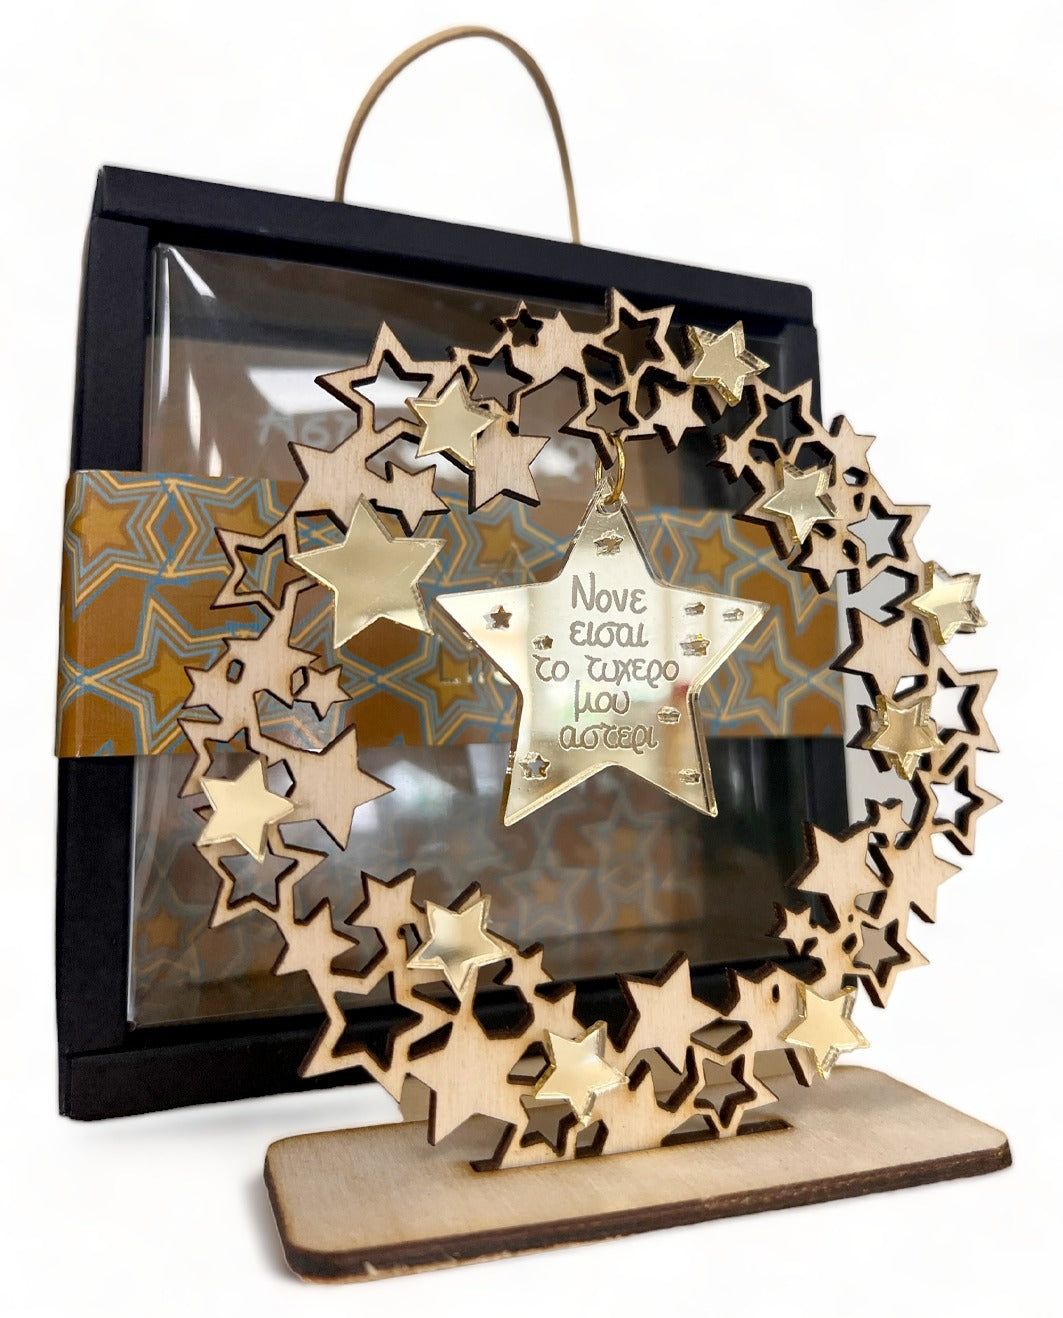 Ξύλινο Γούρι Στεφάνι με Αστέρια & Ευχή "Για τον Νονό" σε Κουτί